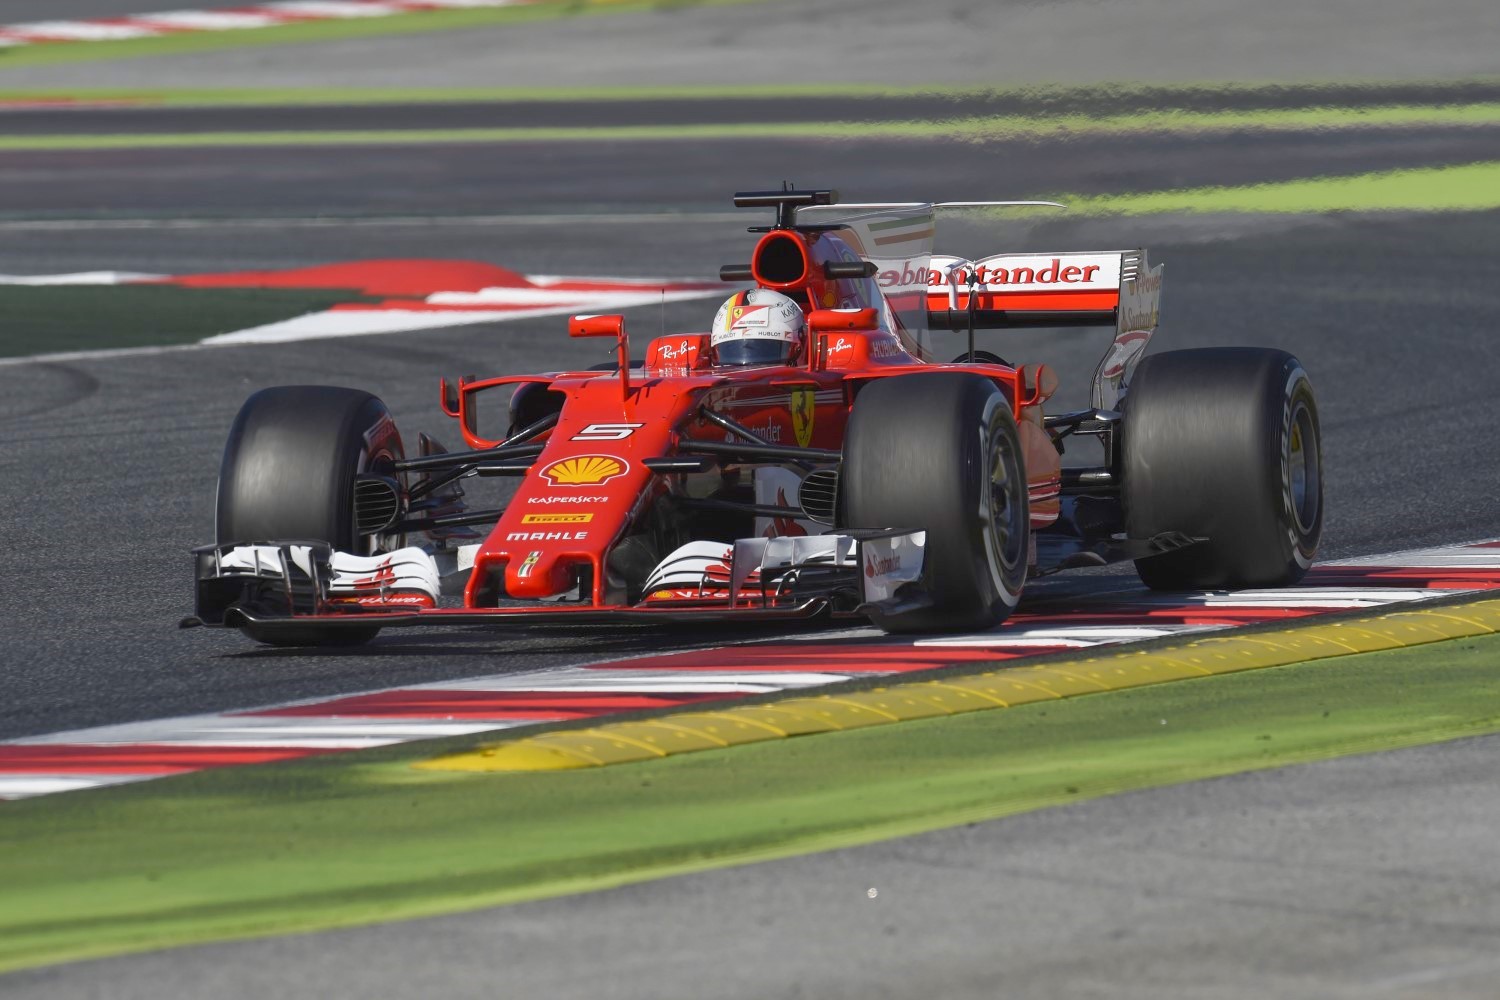 The new Ferrari is fast